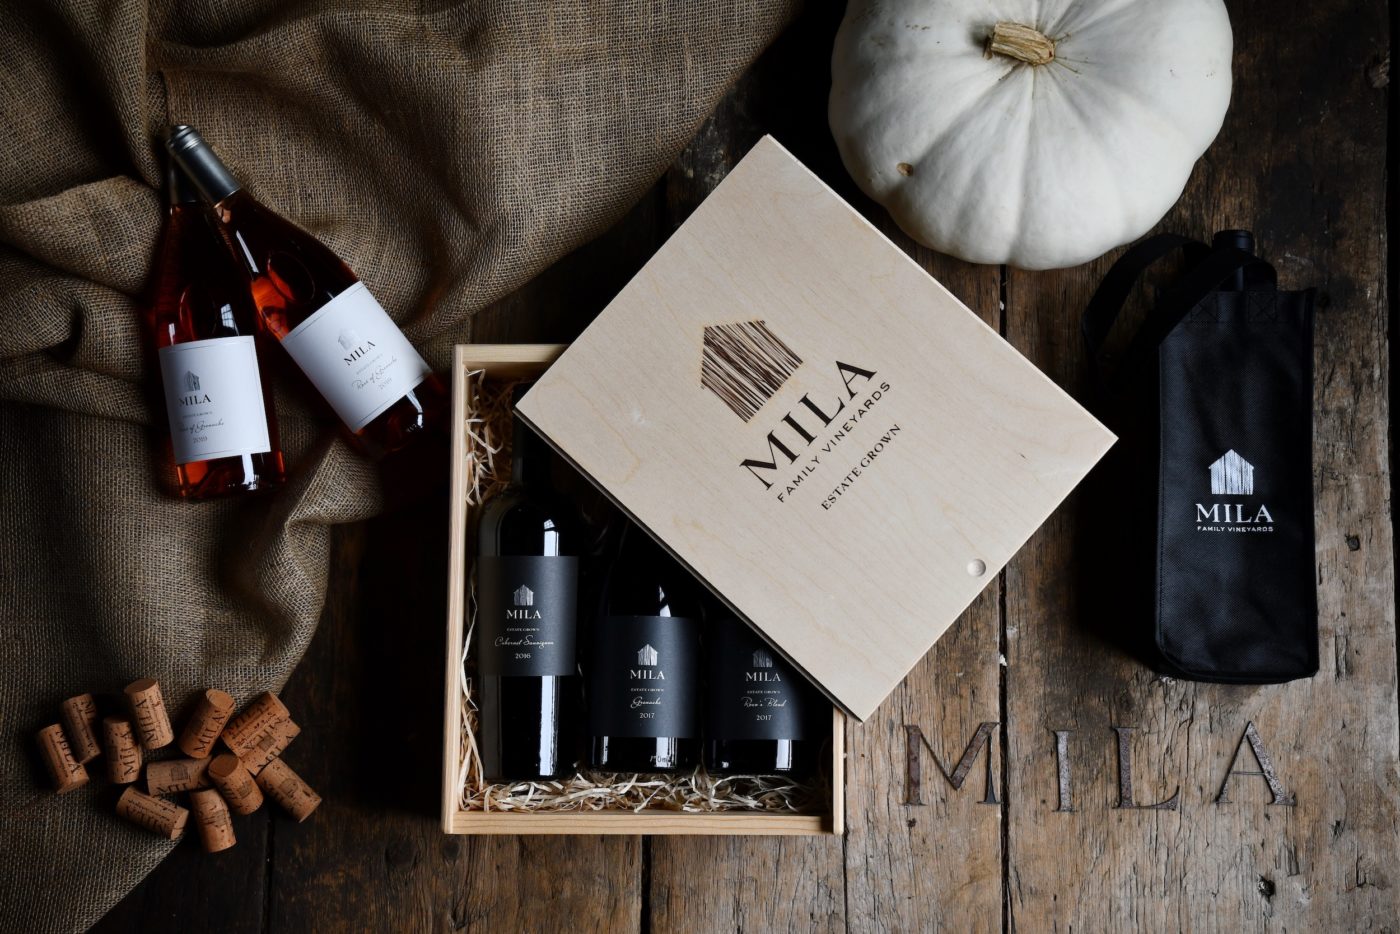 Mila bottles, fall scene